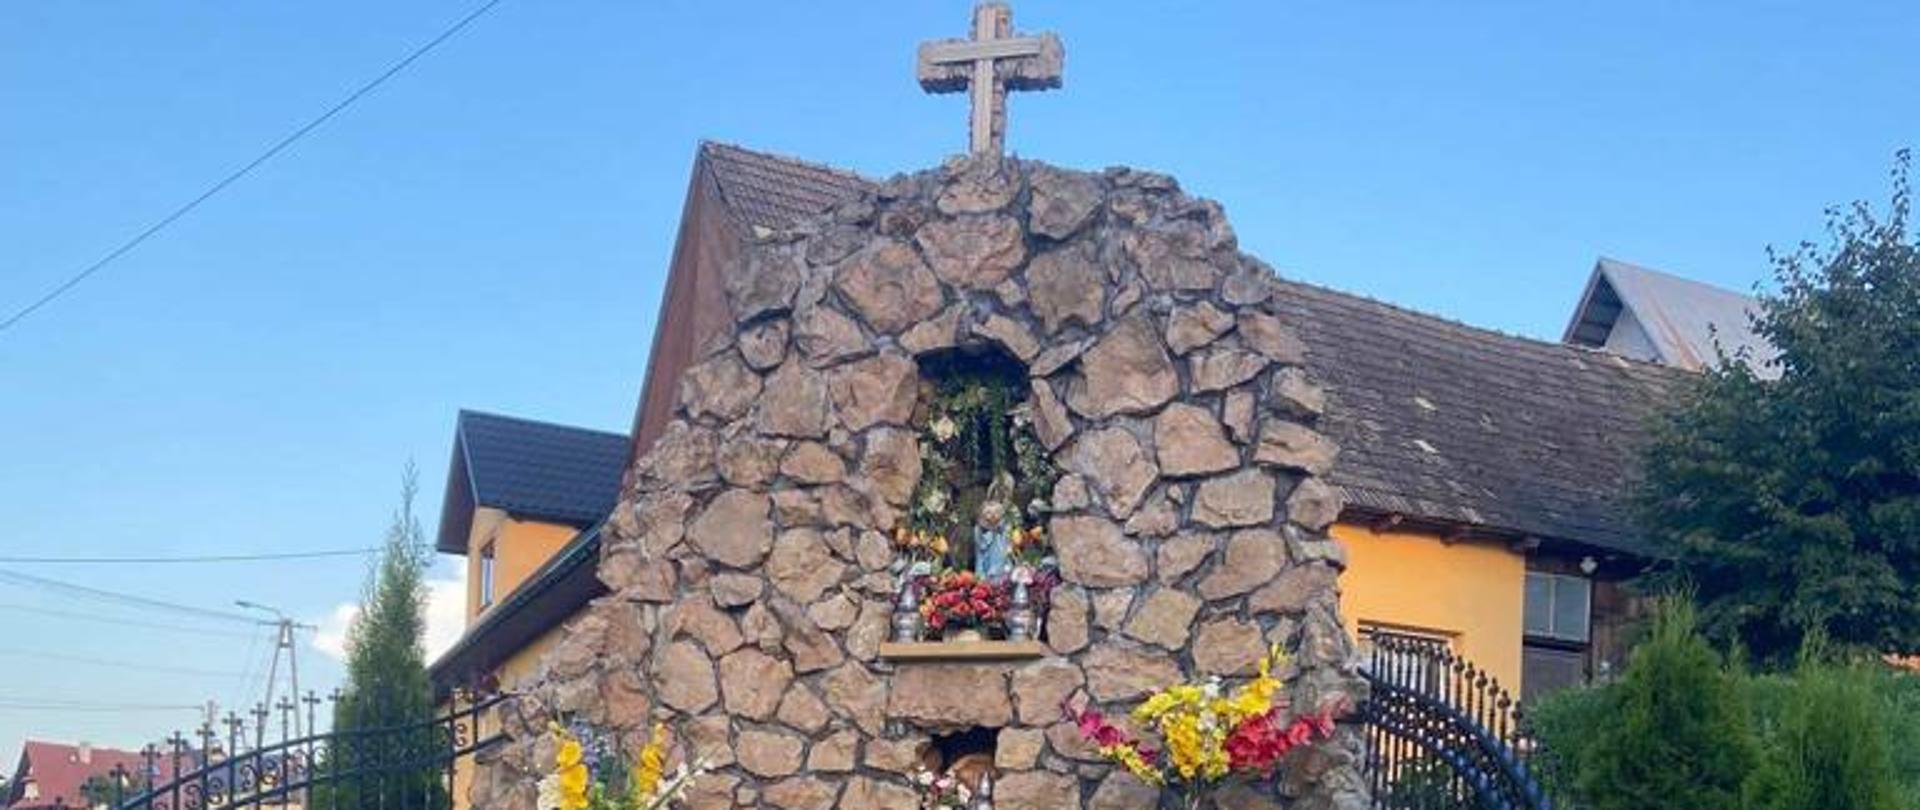 Kapliczka Matki Boskiej na roli Spyrłówka ,która upamiętnia tragiczne zdarzenie z II wojny światowej.